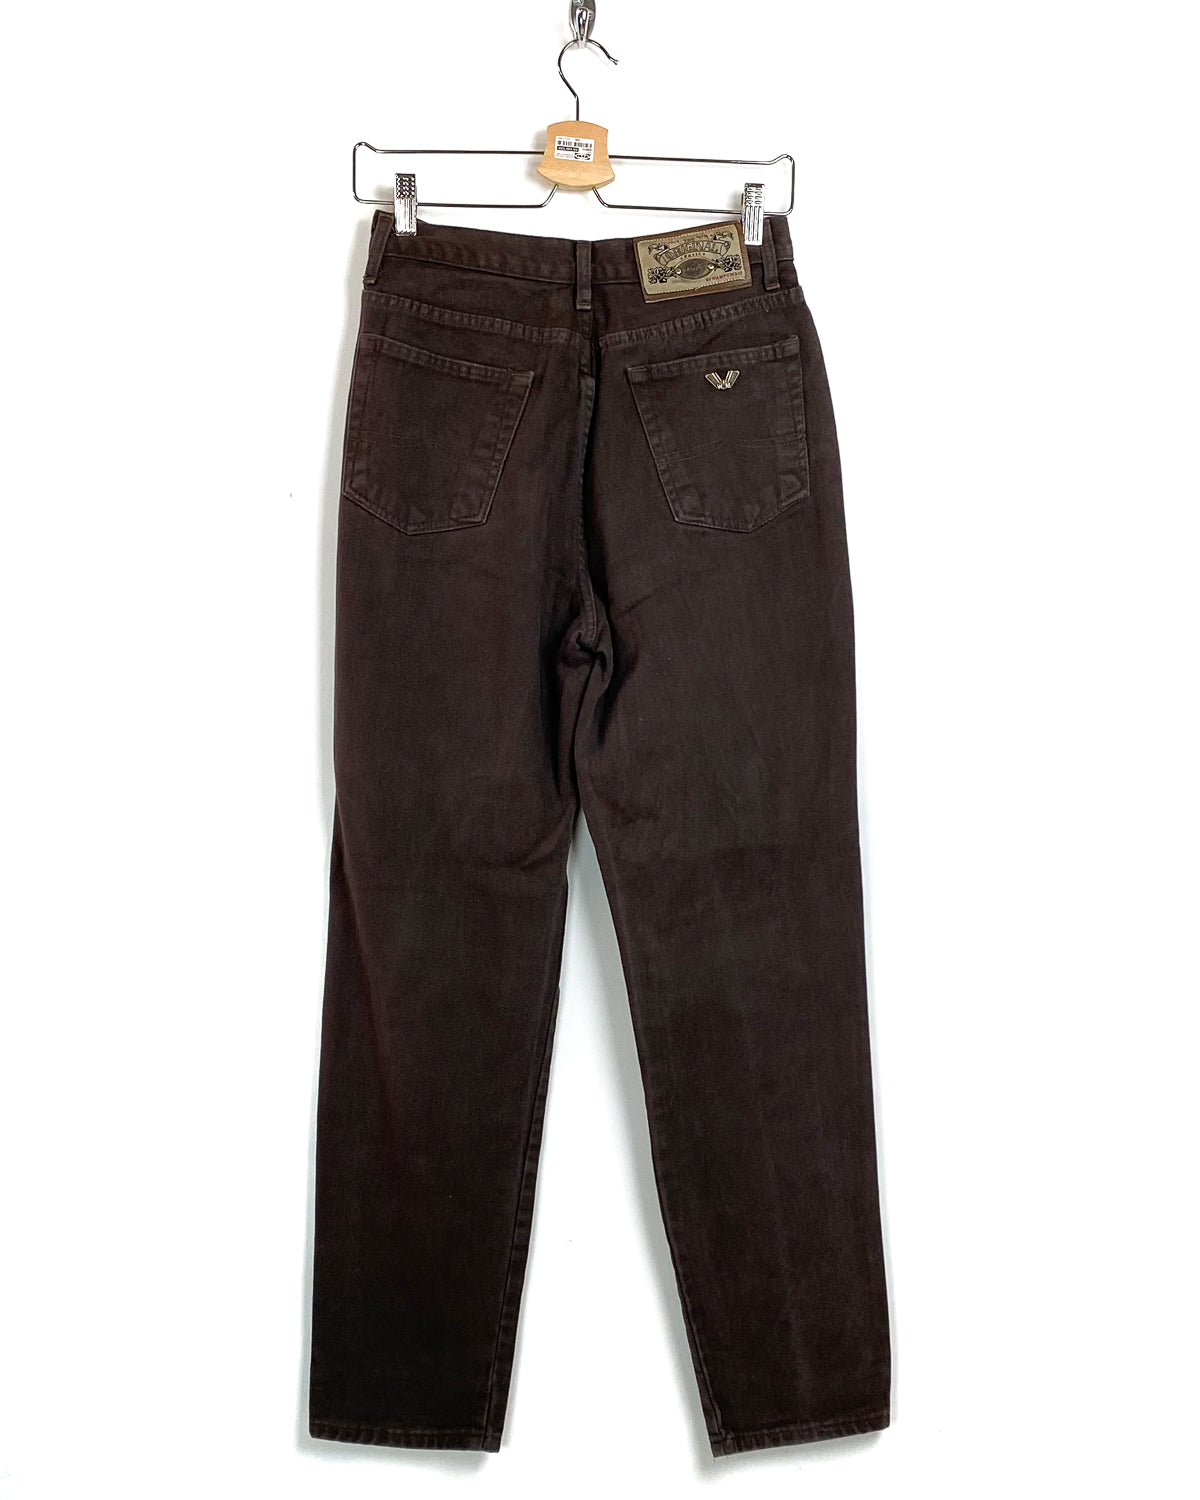 Wampum - Jeans Vintage Taglia 46